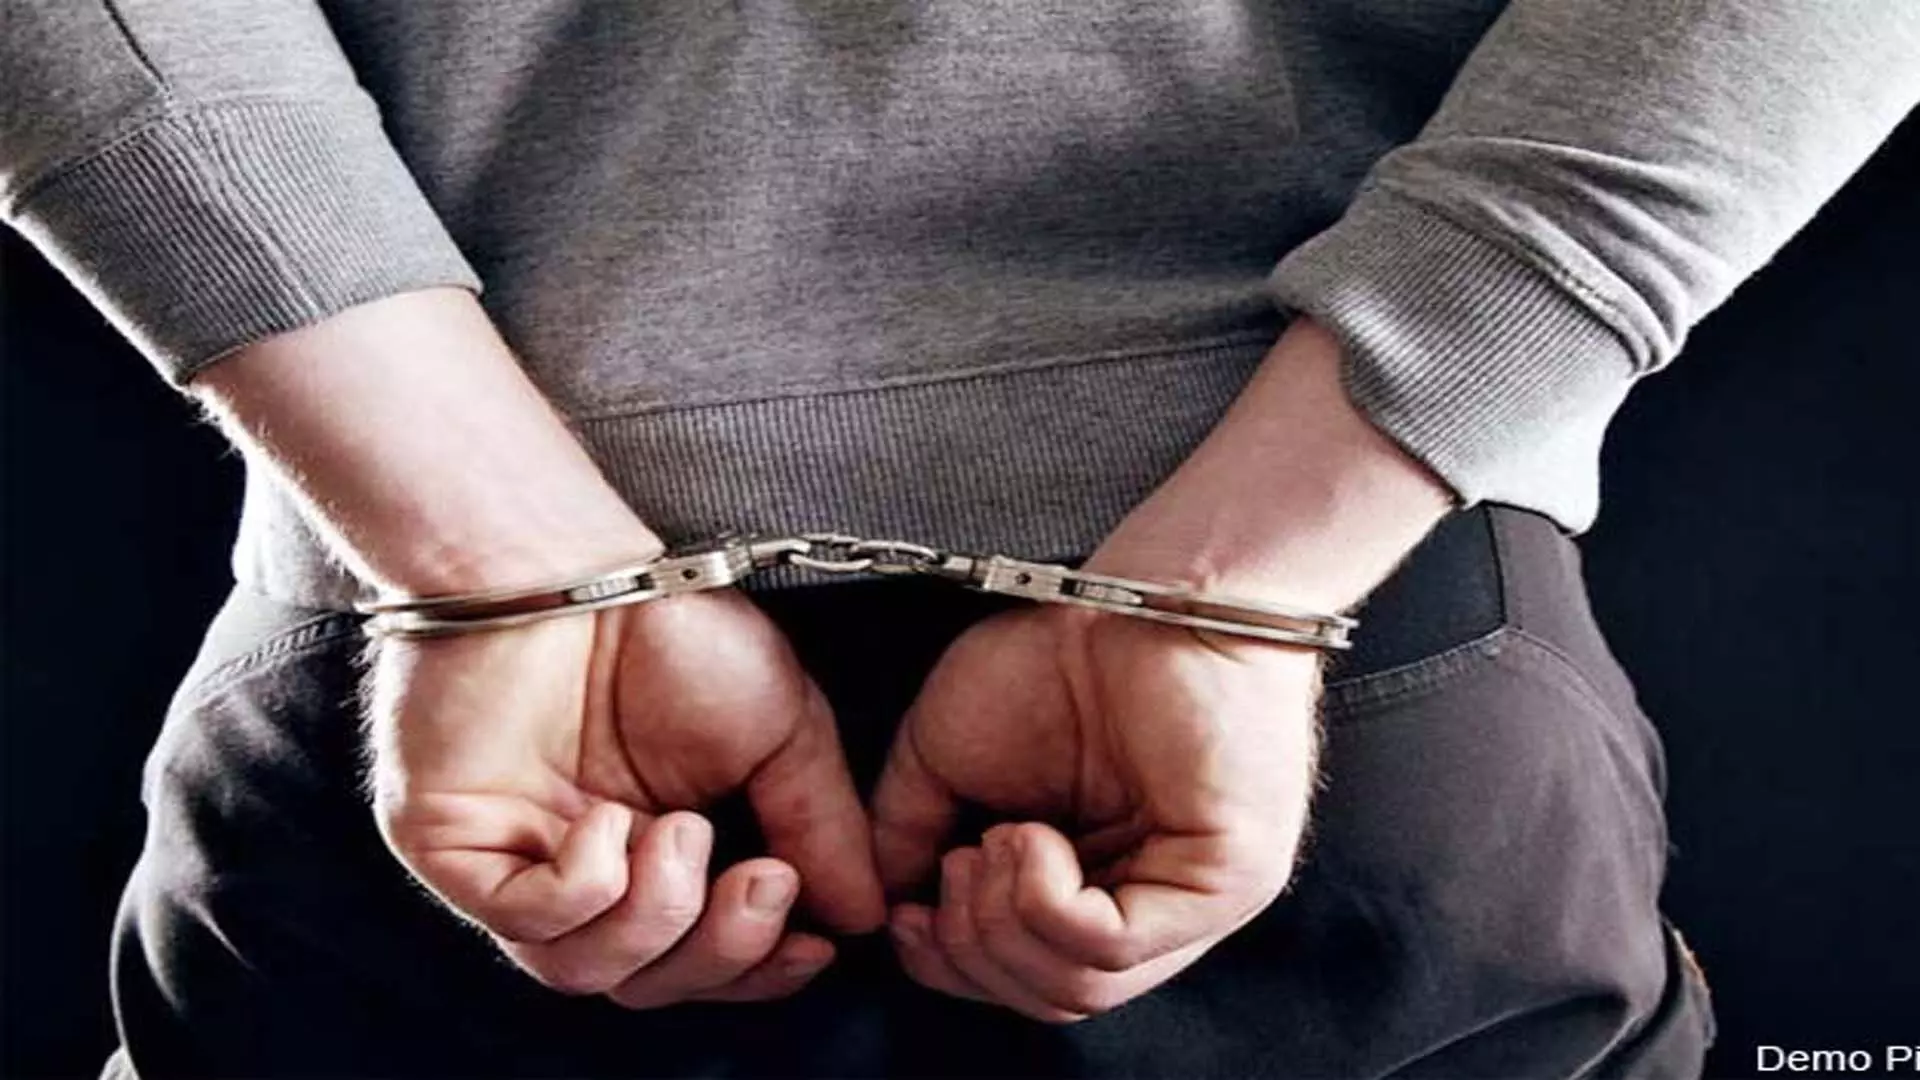 Assault charges: नोएडा के किशोर को मारपीट के आरोप में 3 महीने की सजा